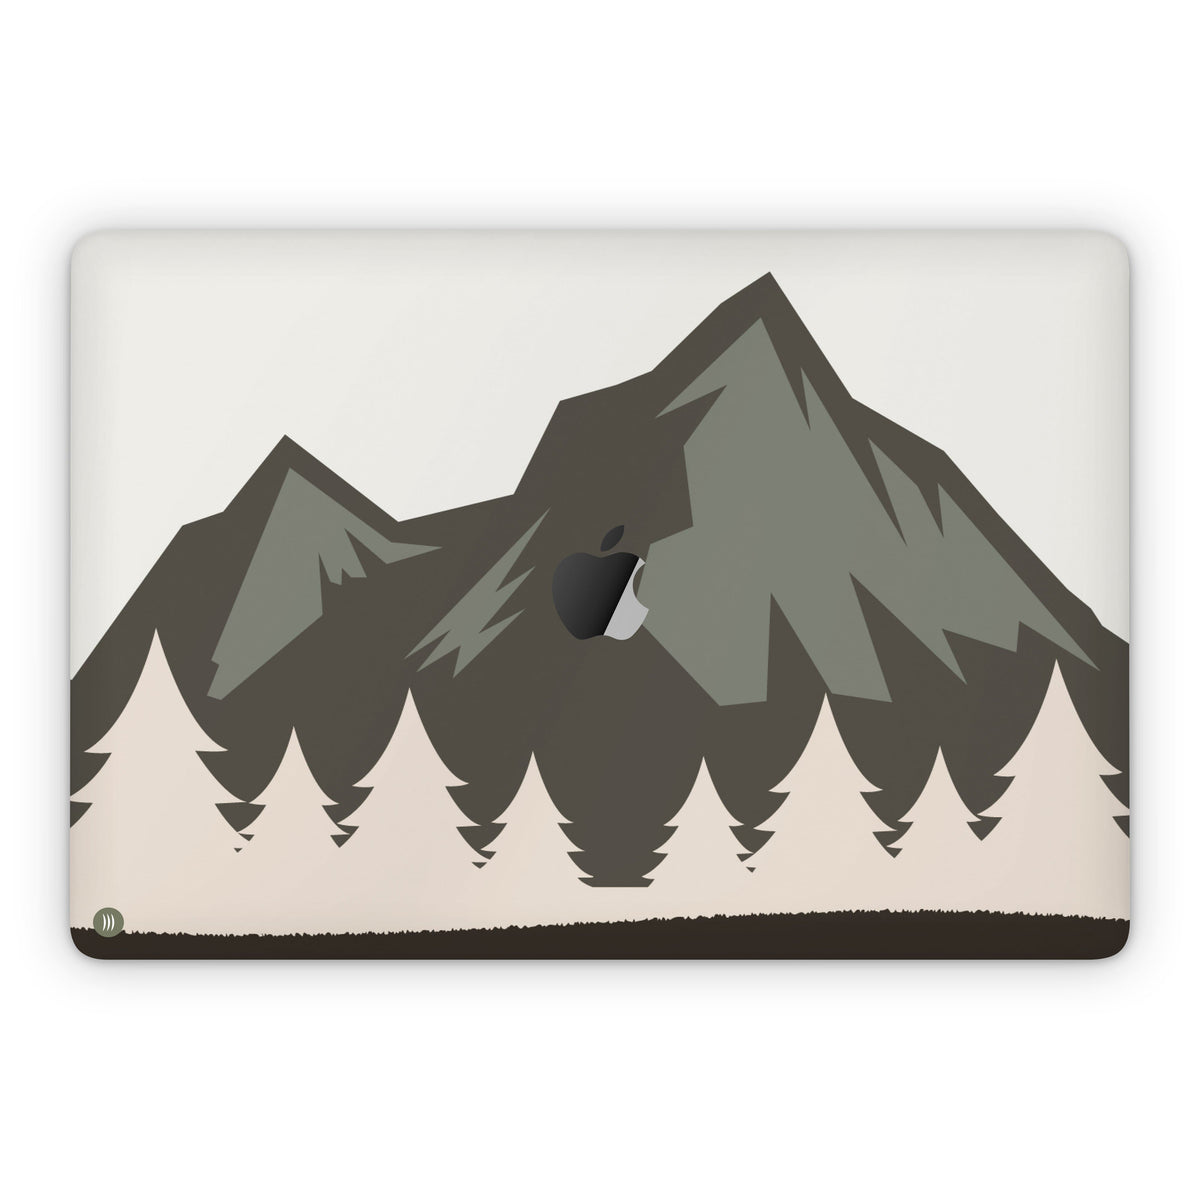 Timber (MacBook Skin)